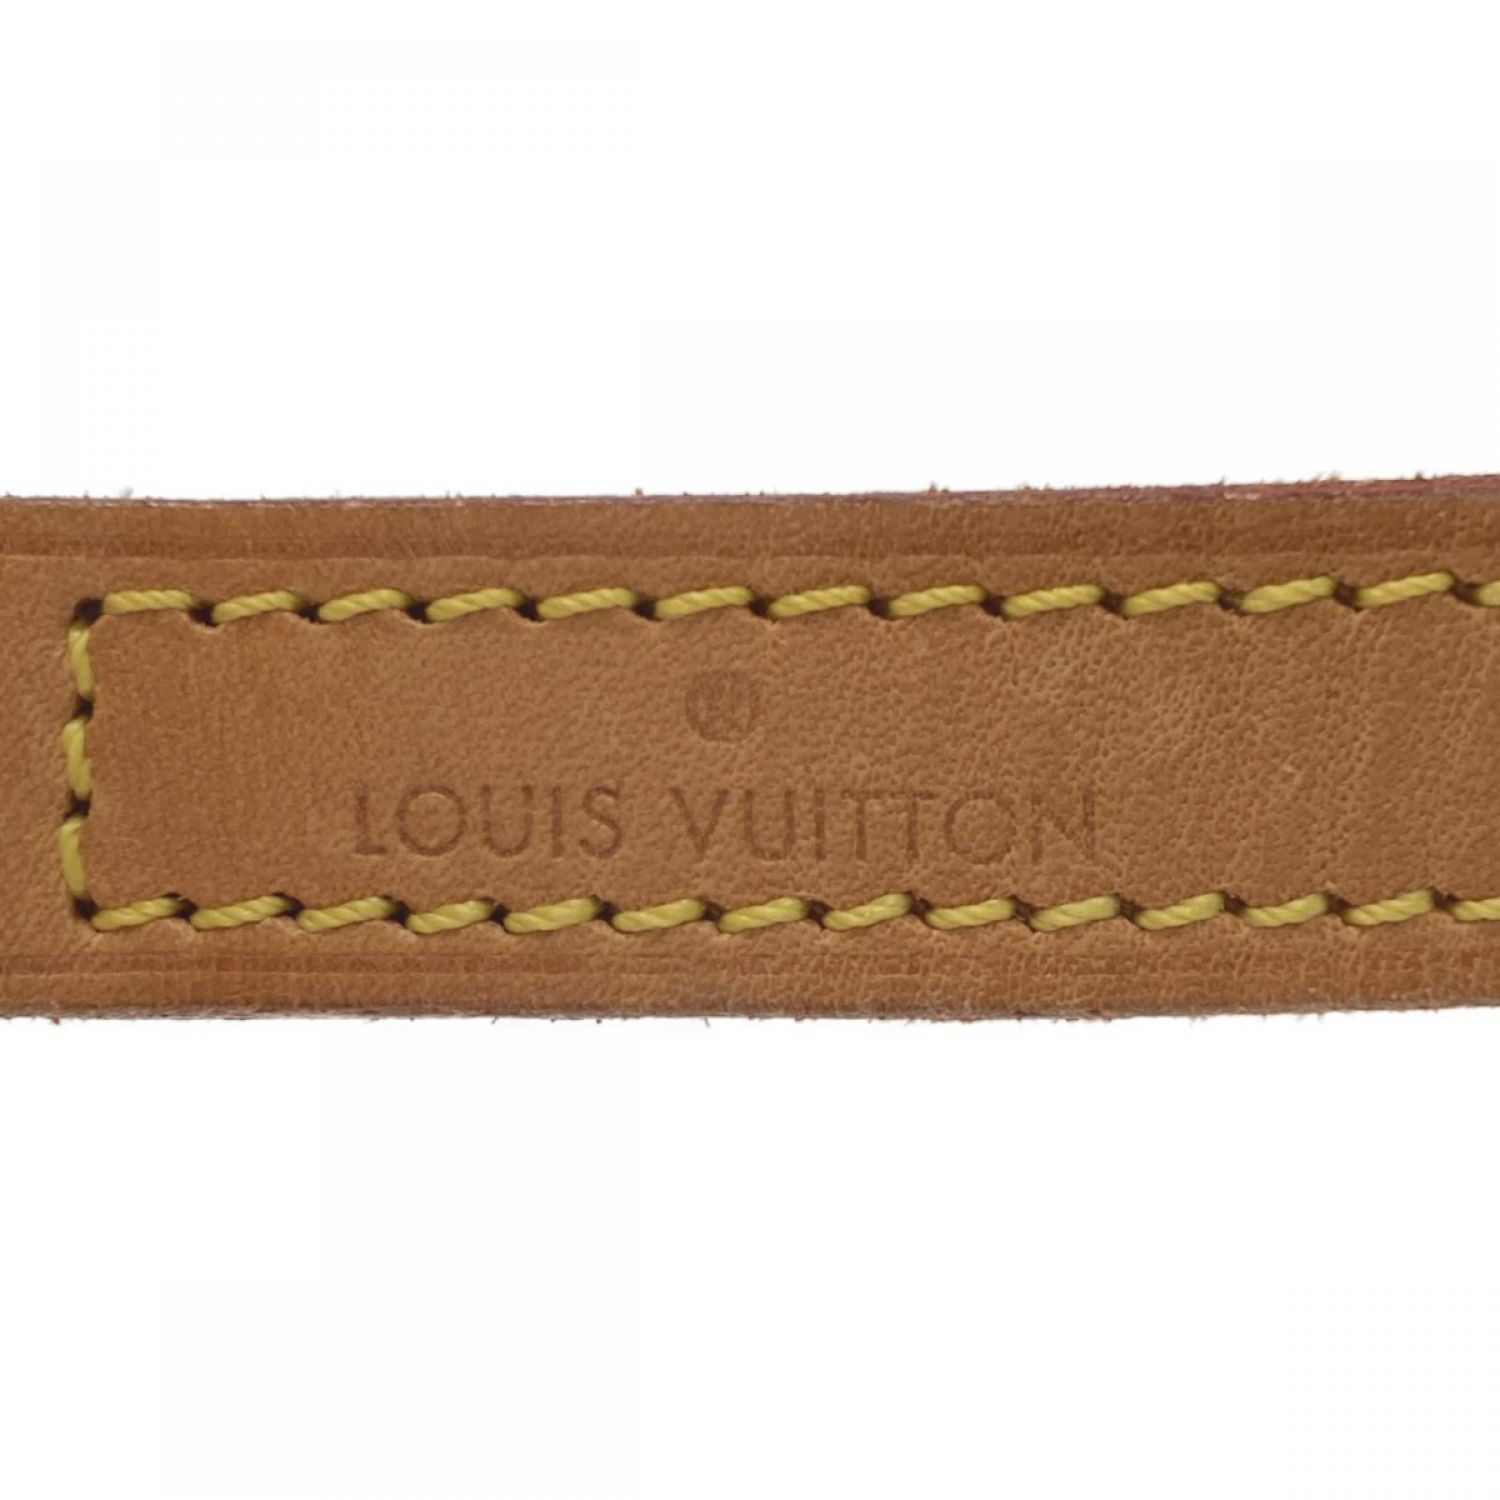 LOUIS VUITTON ルイヴィトン バッグ用  121cm  G金具 ヴィンテージ ショルダーストラップ ヌメ革 ナチュラル ユニセックス